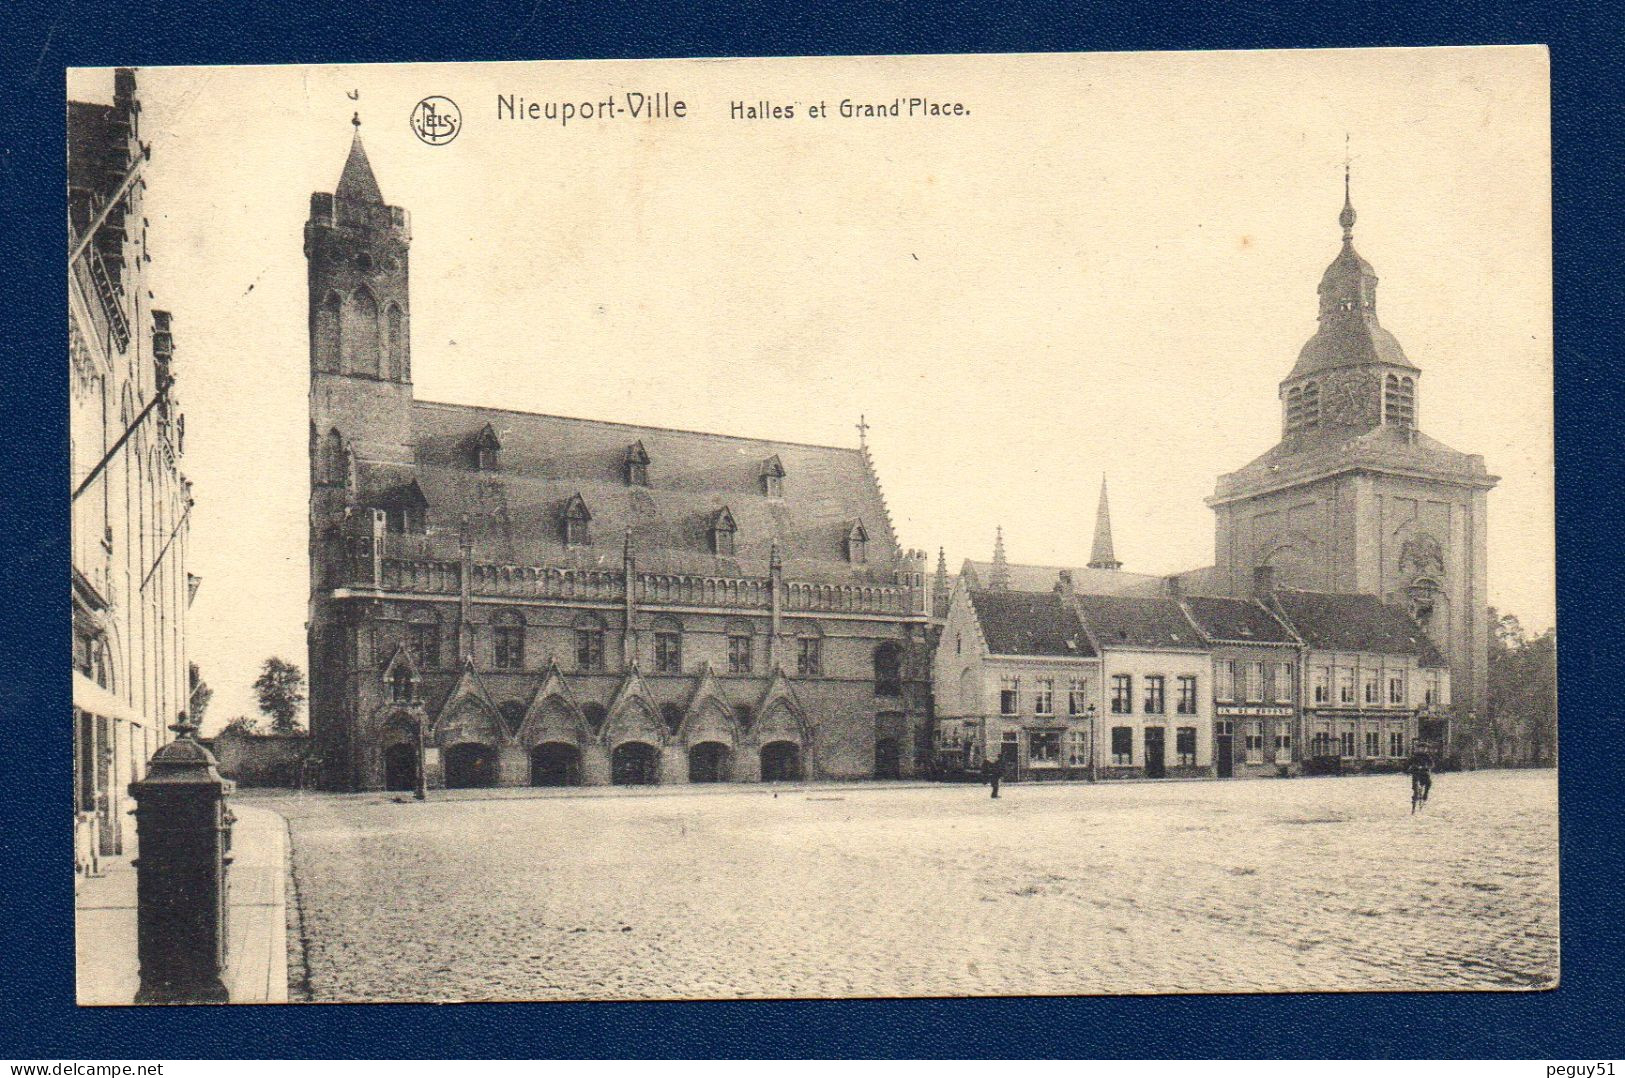 Nieuport - Ville. Les Halles Et La Grand' Place. Feldpost Der 53. Reserve Division. 1915 - Nieuwpoort